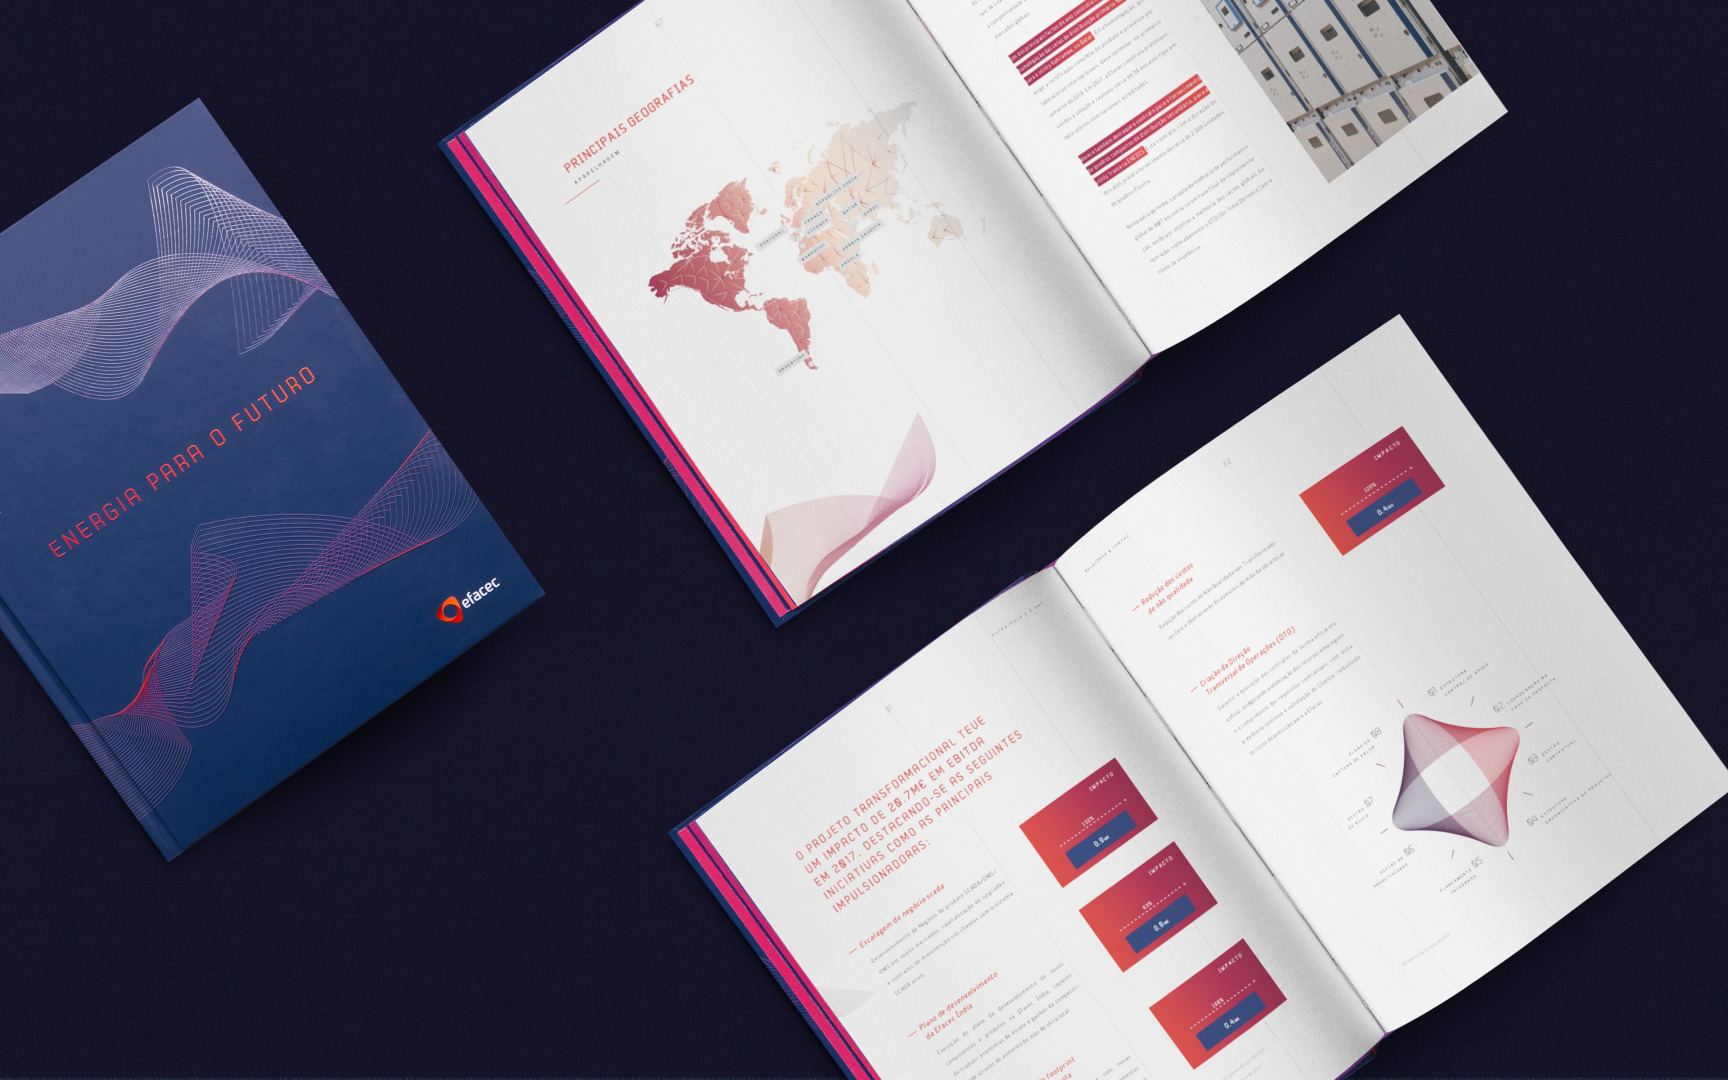 EFACEC Livro relatório de contas 2017. Imagem representativa do design do livro de contas do ano de 2017 da Efacec.